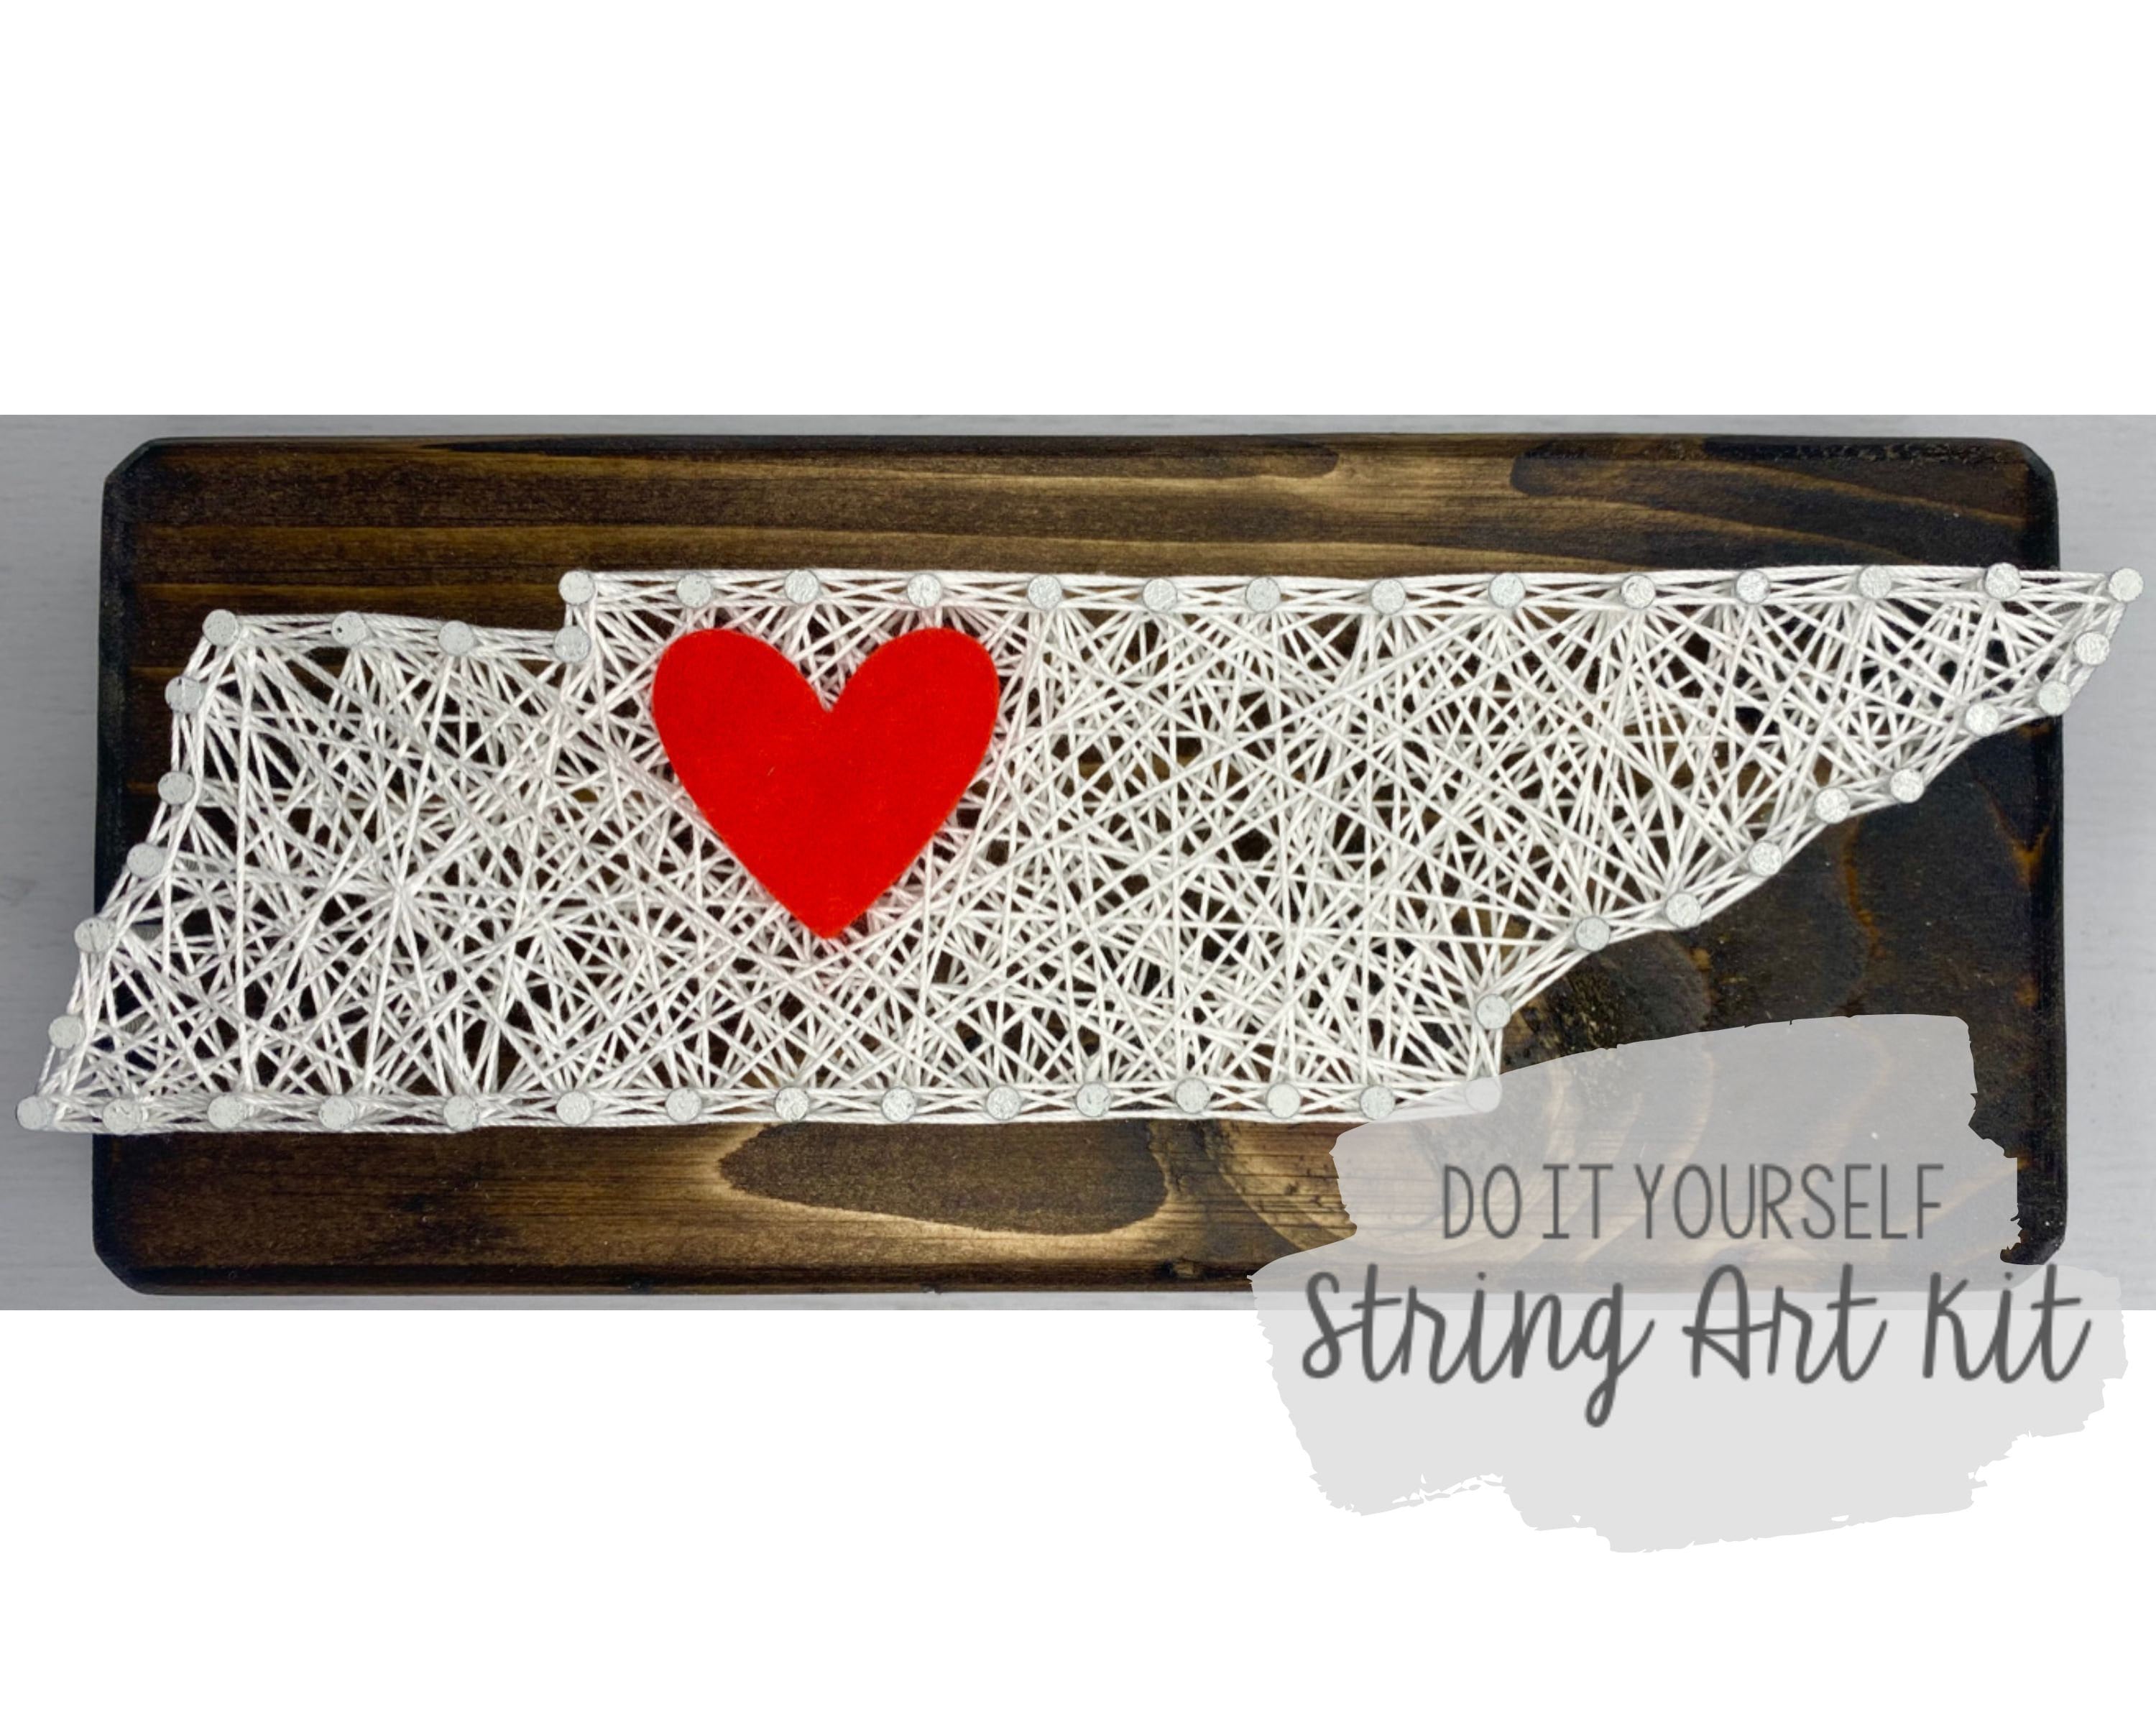 DIY 5x5 Girl Scout Trefoil String Art Kit 